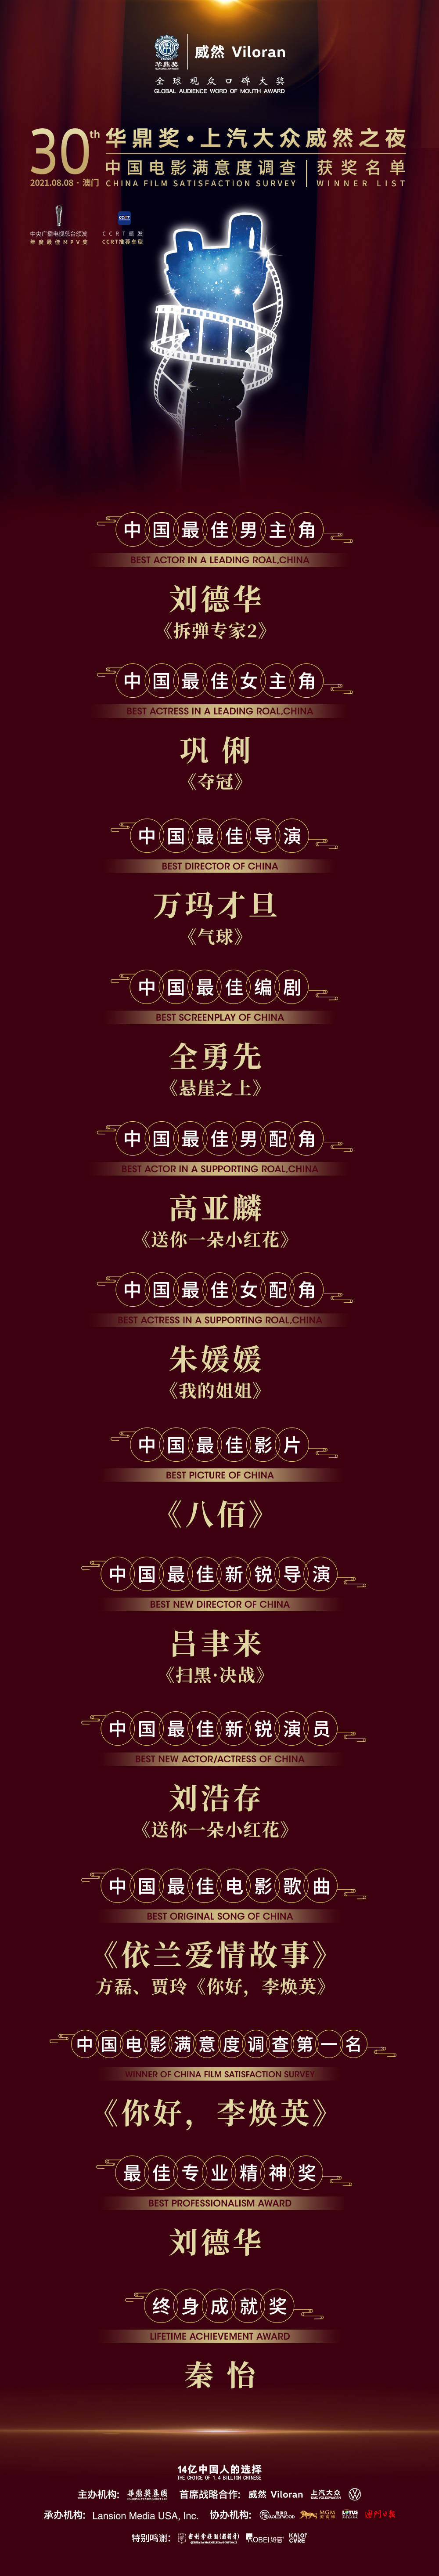 《八佰》获第30届华鼎奖最佳影片 刘德华凭《拆弹专家2》获影帝